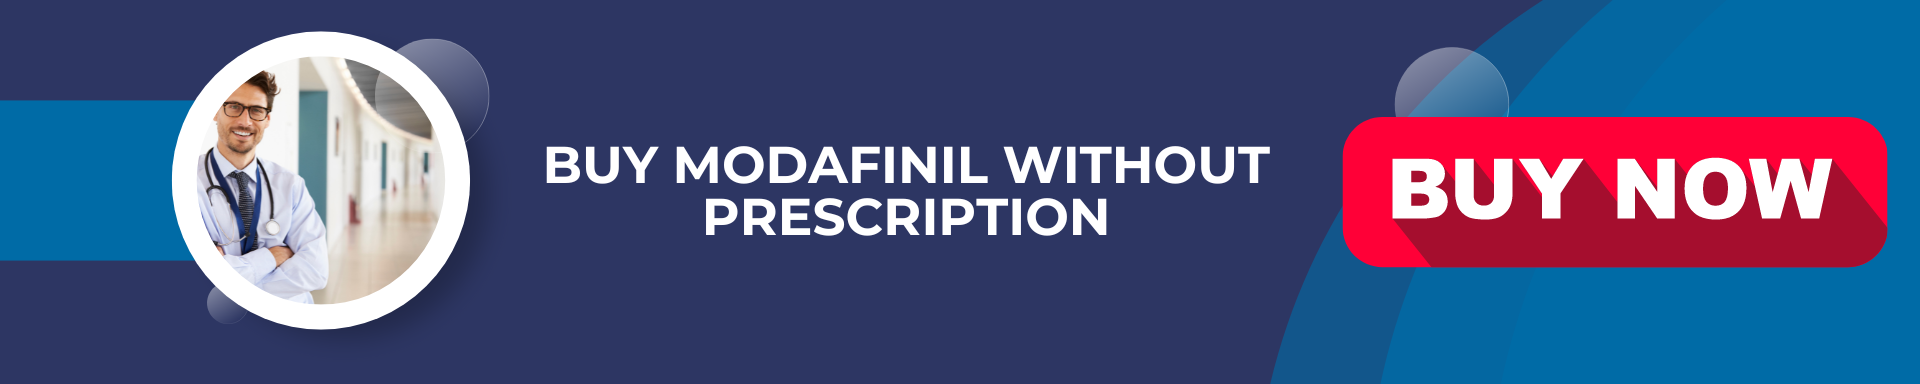 Buy Modafinil no prescription